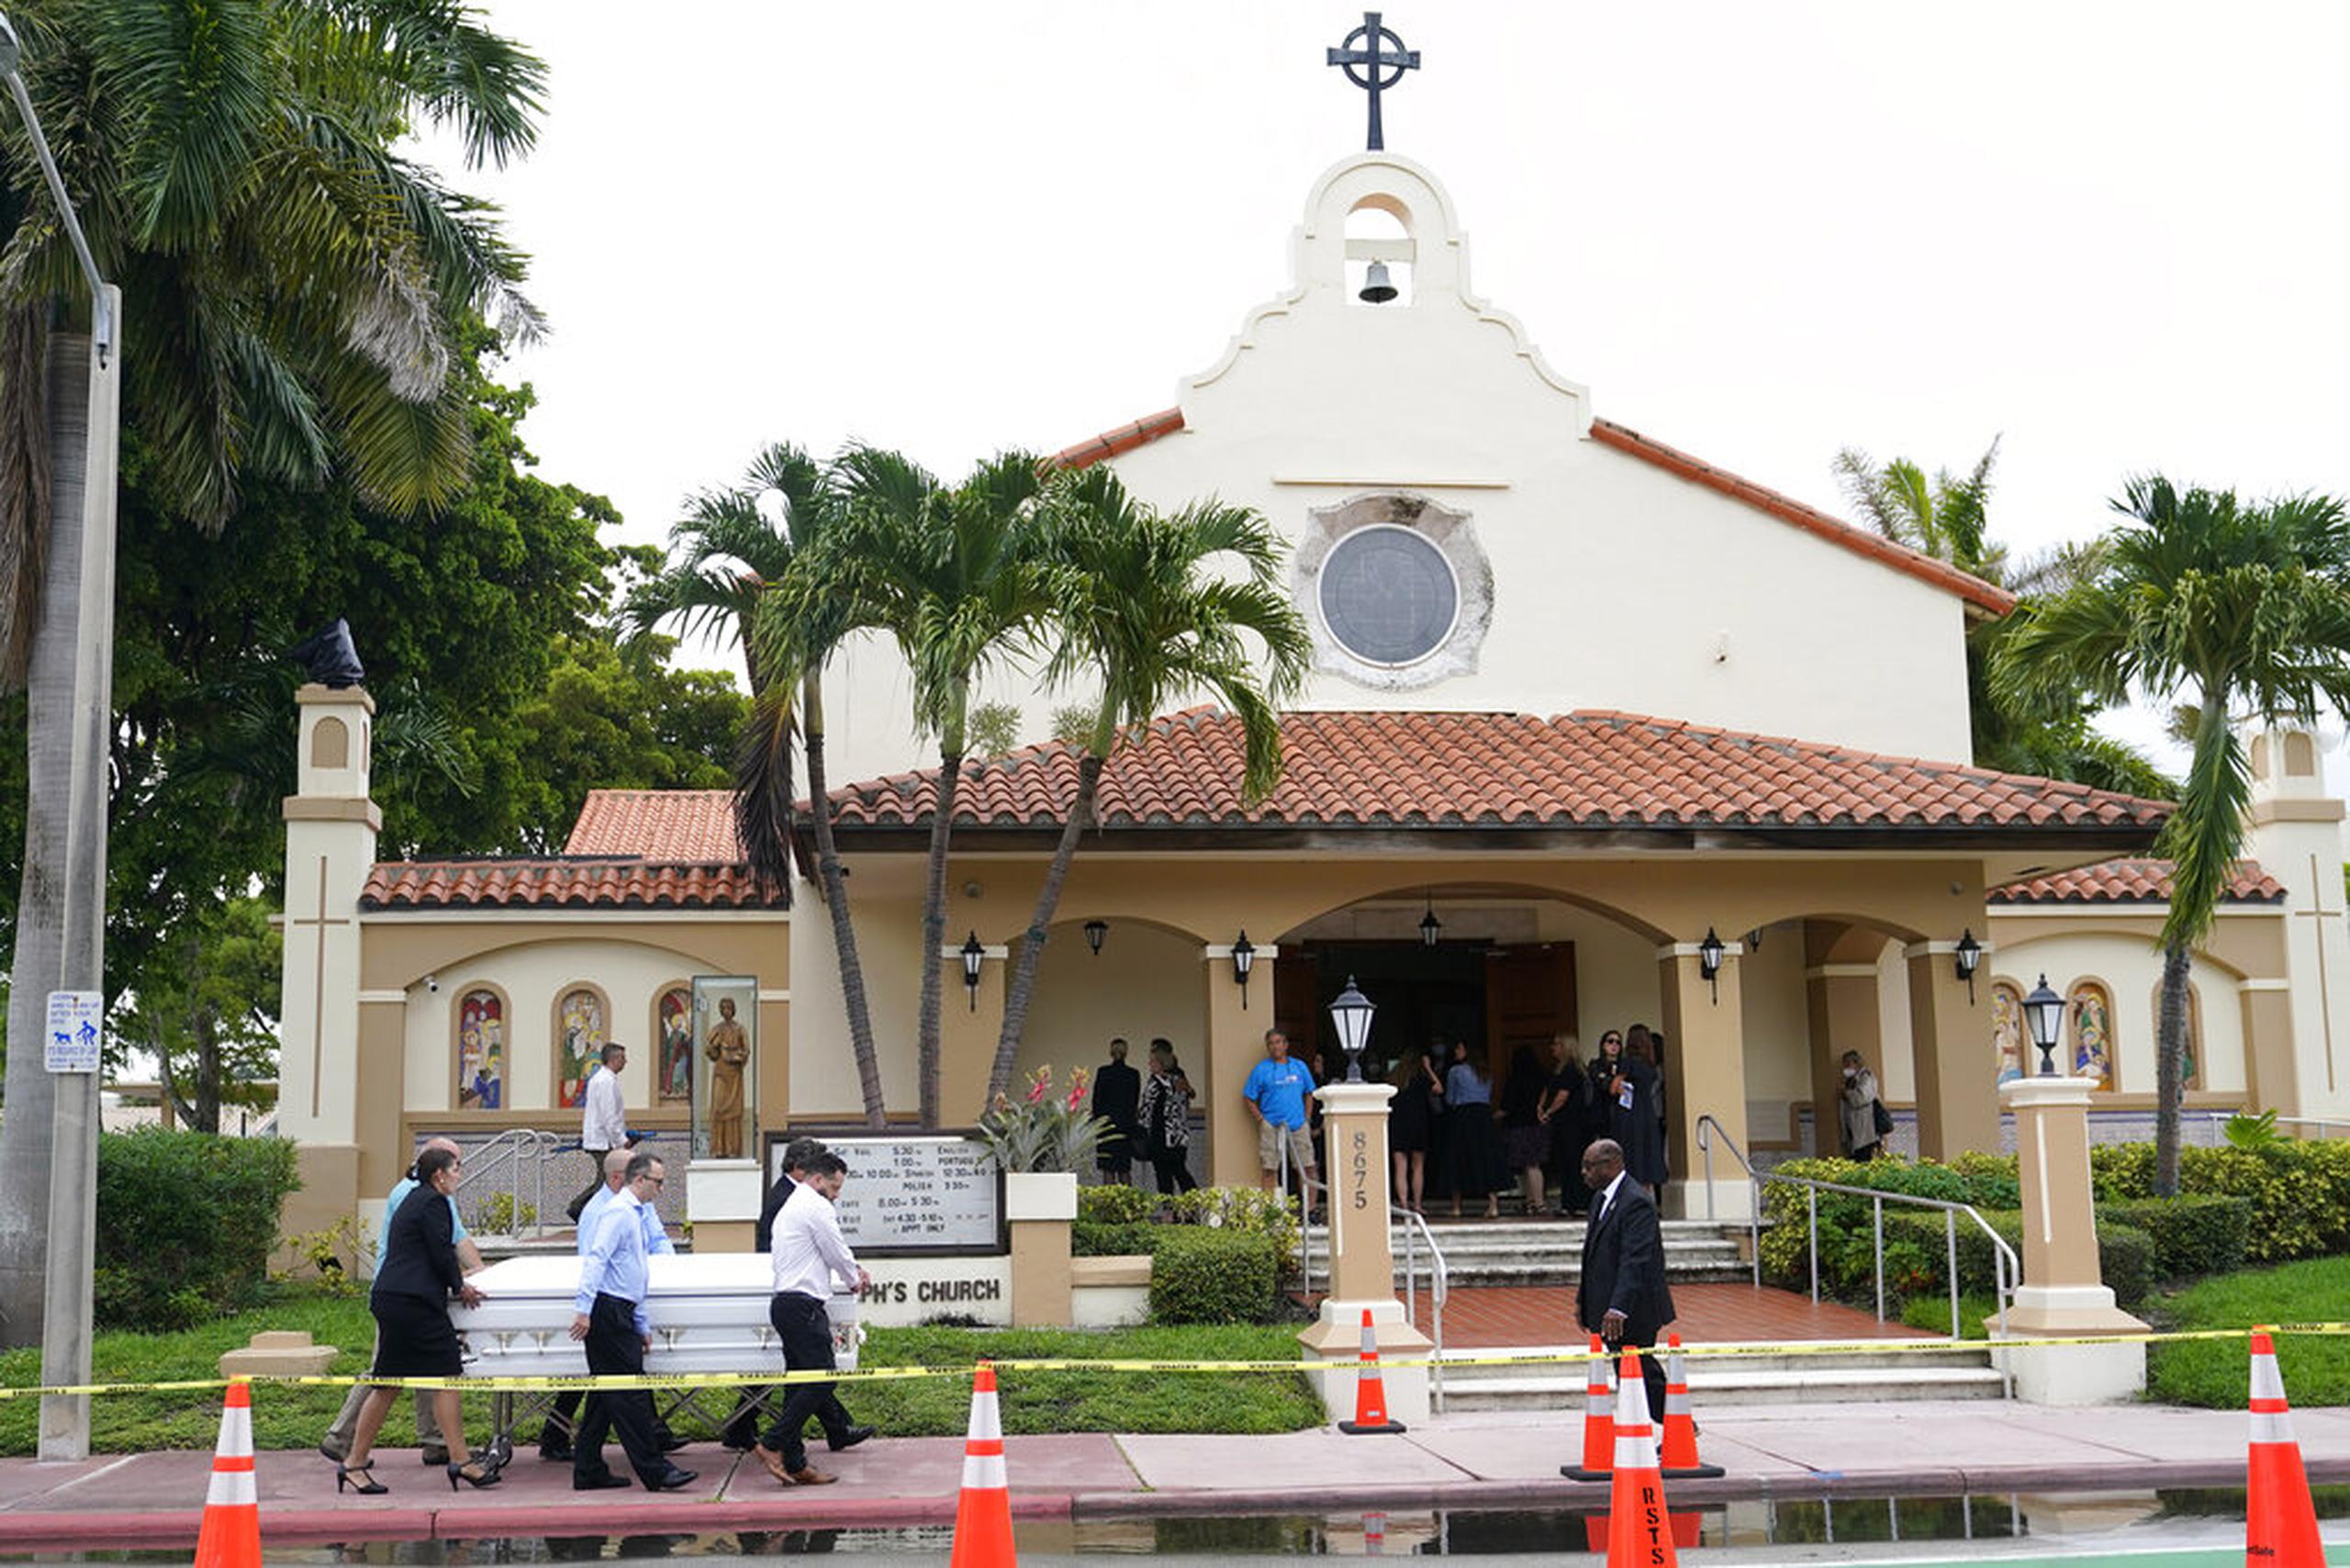 El funeral se llevó a cabo en la parroquia de St. Joseph, la iglesia católica al que acudía la familia Guara.